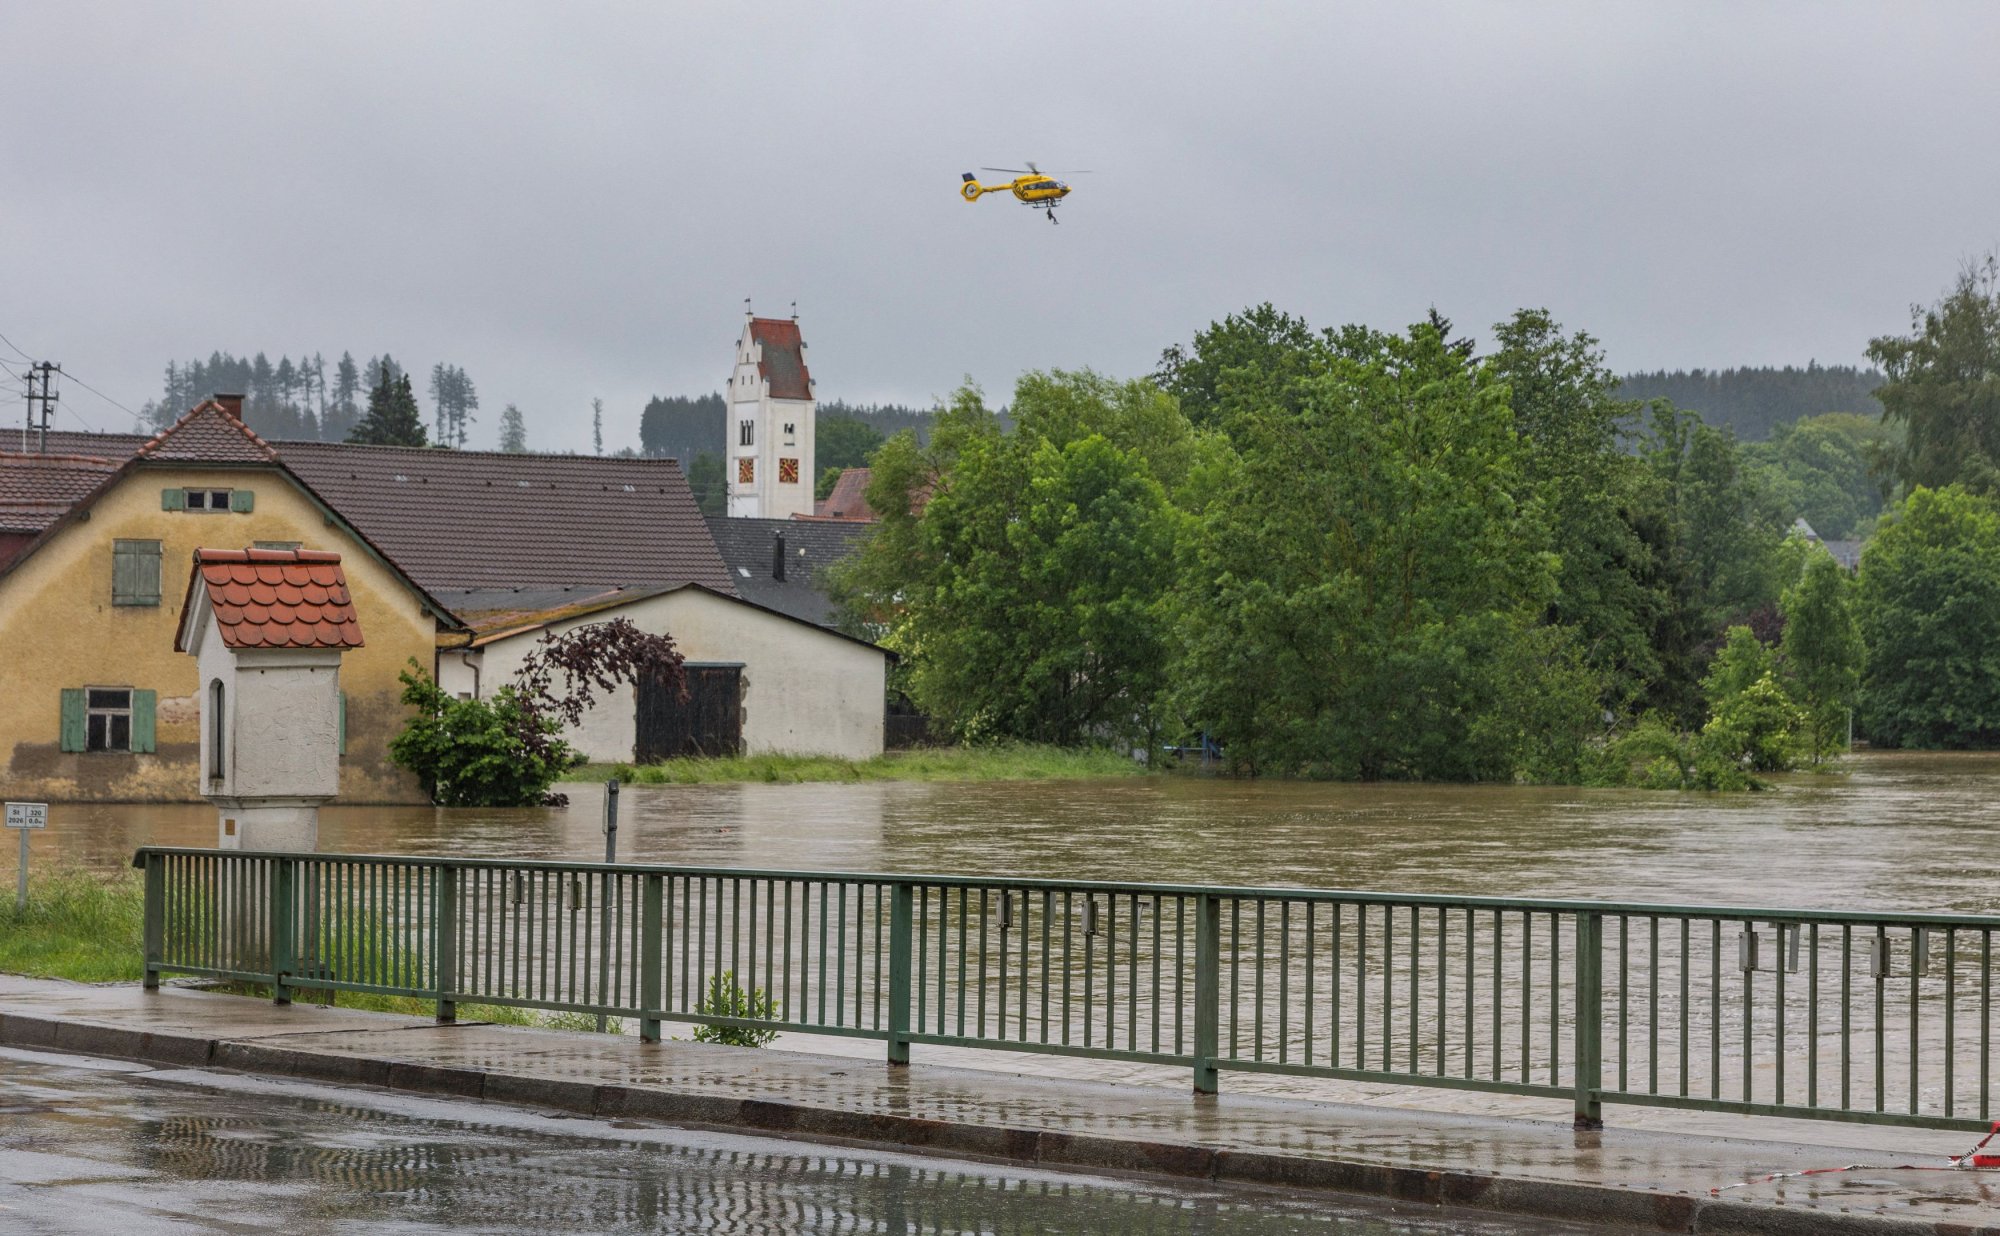 Γερμανία: Σφοδρή κακοκαιρία πλήττει τη χώρα – Σε κατάσταση ανάγκης πολλές περιοχές – Πλημμύρες και εκκενώσεις σπιτιών